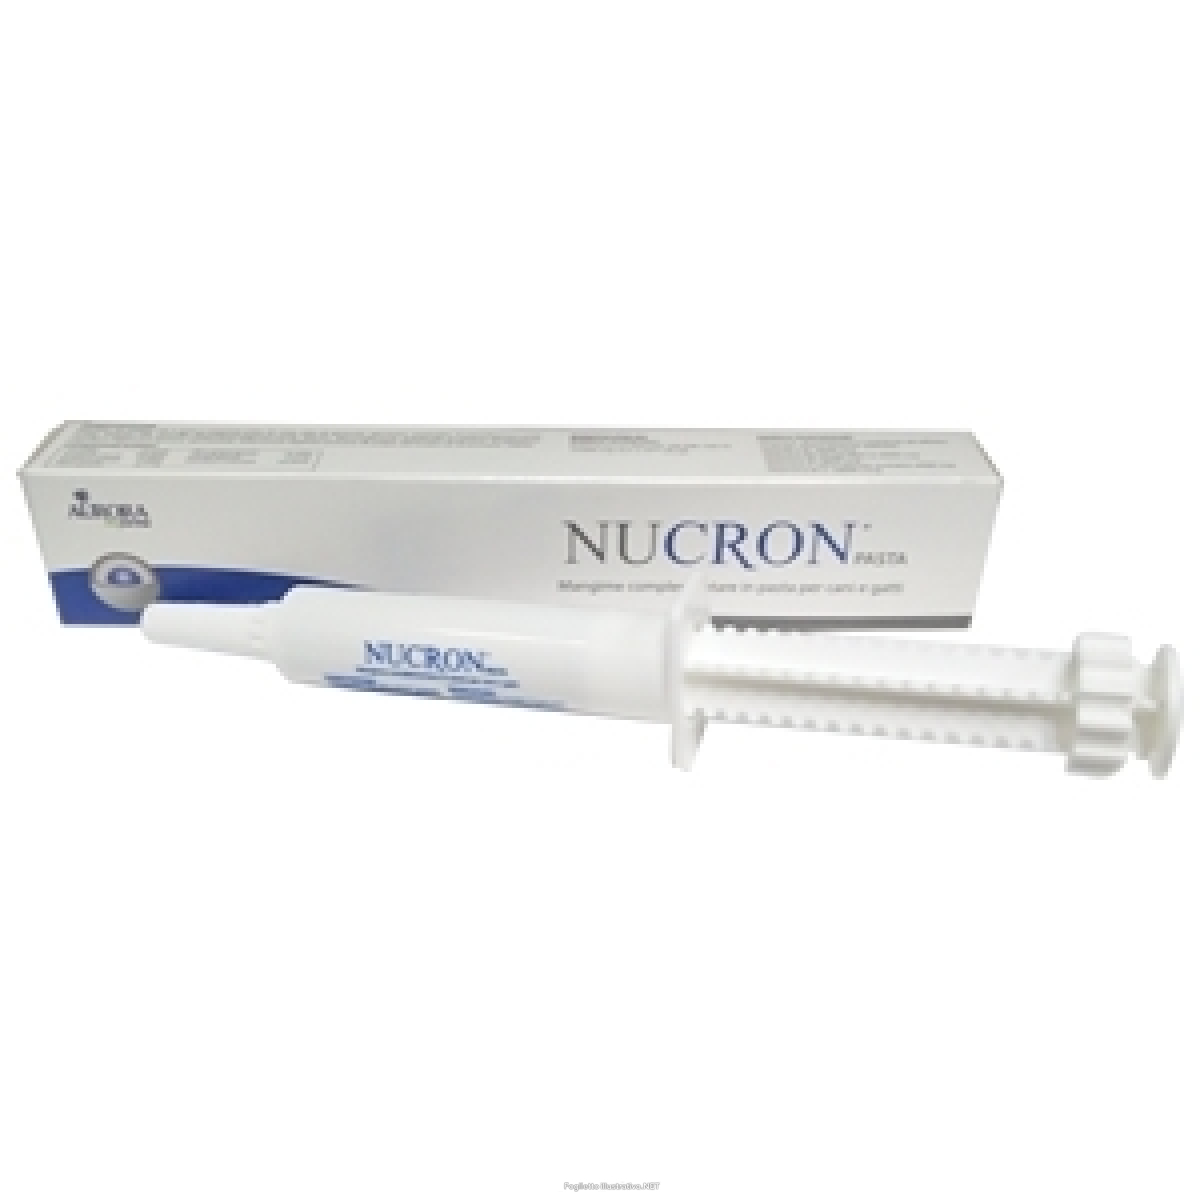 nucron